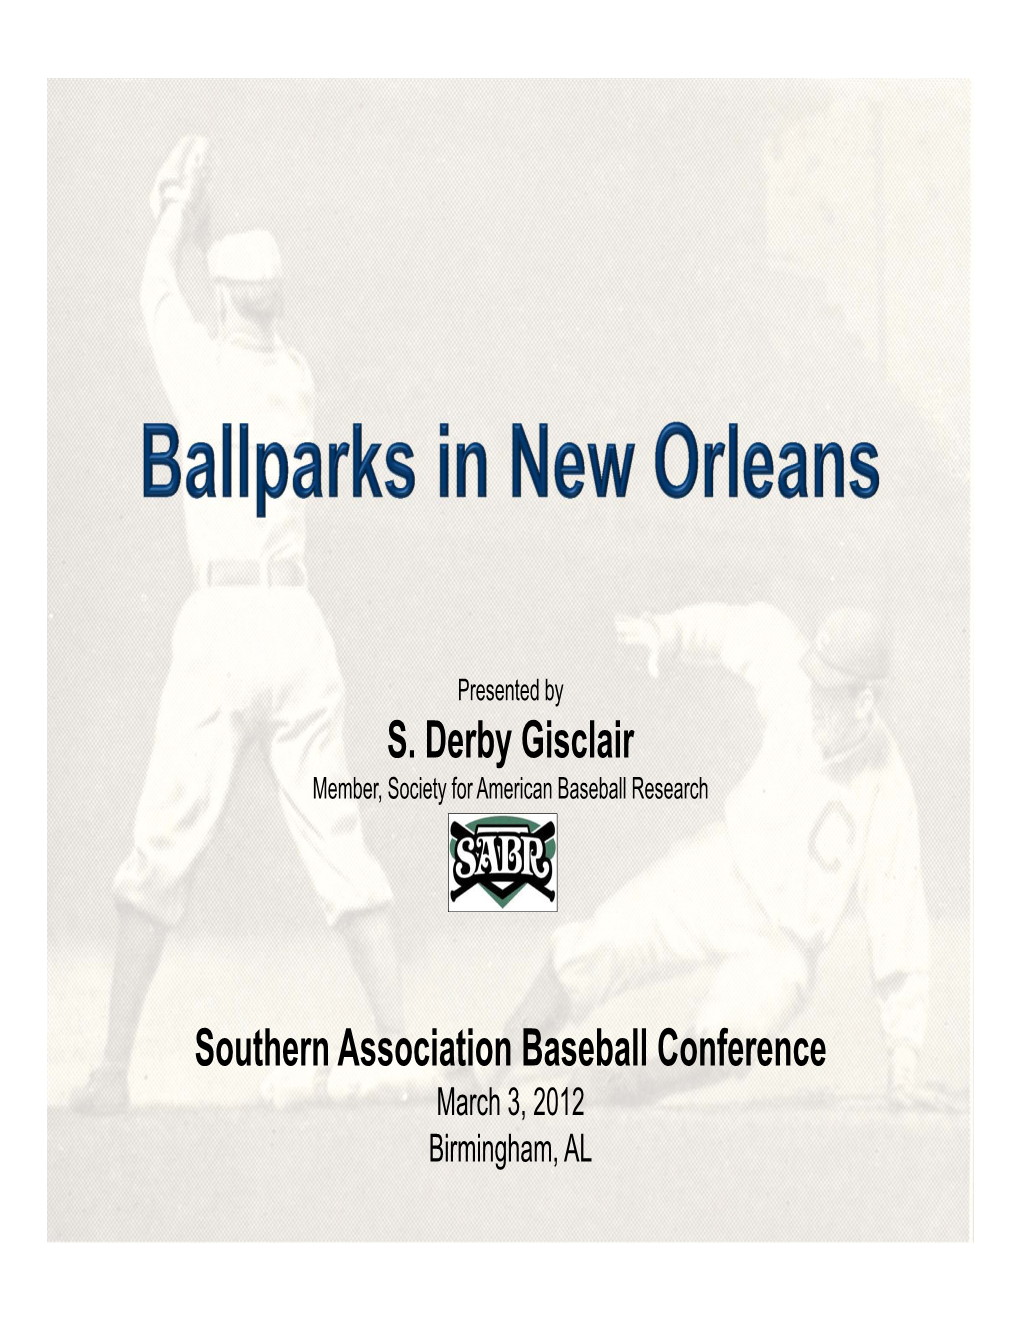 New Orleans Ballparks